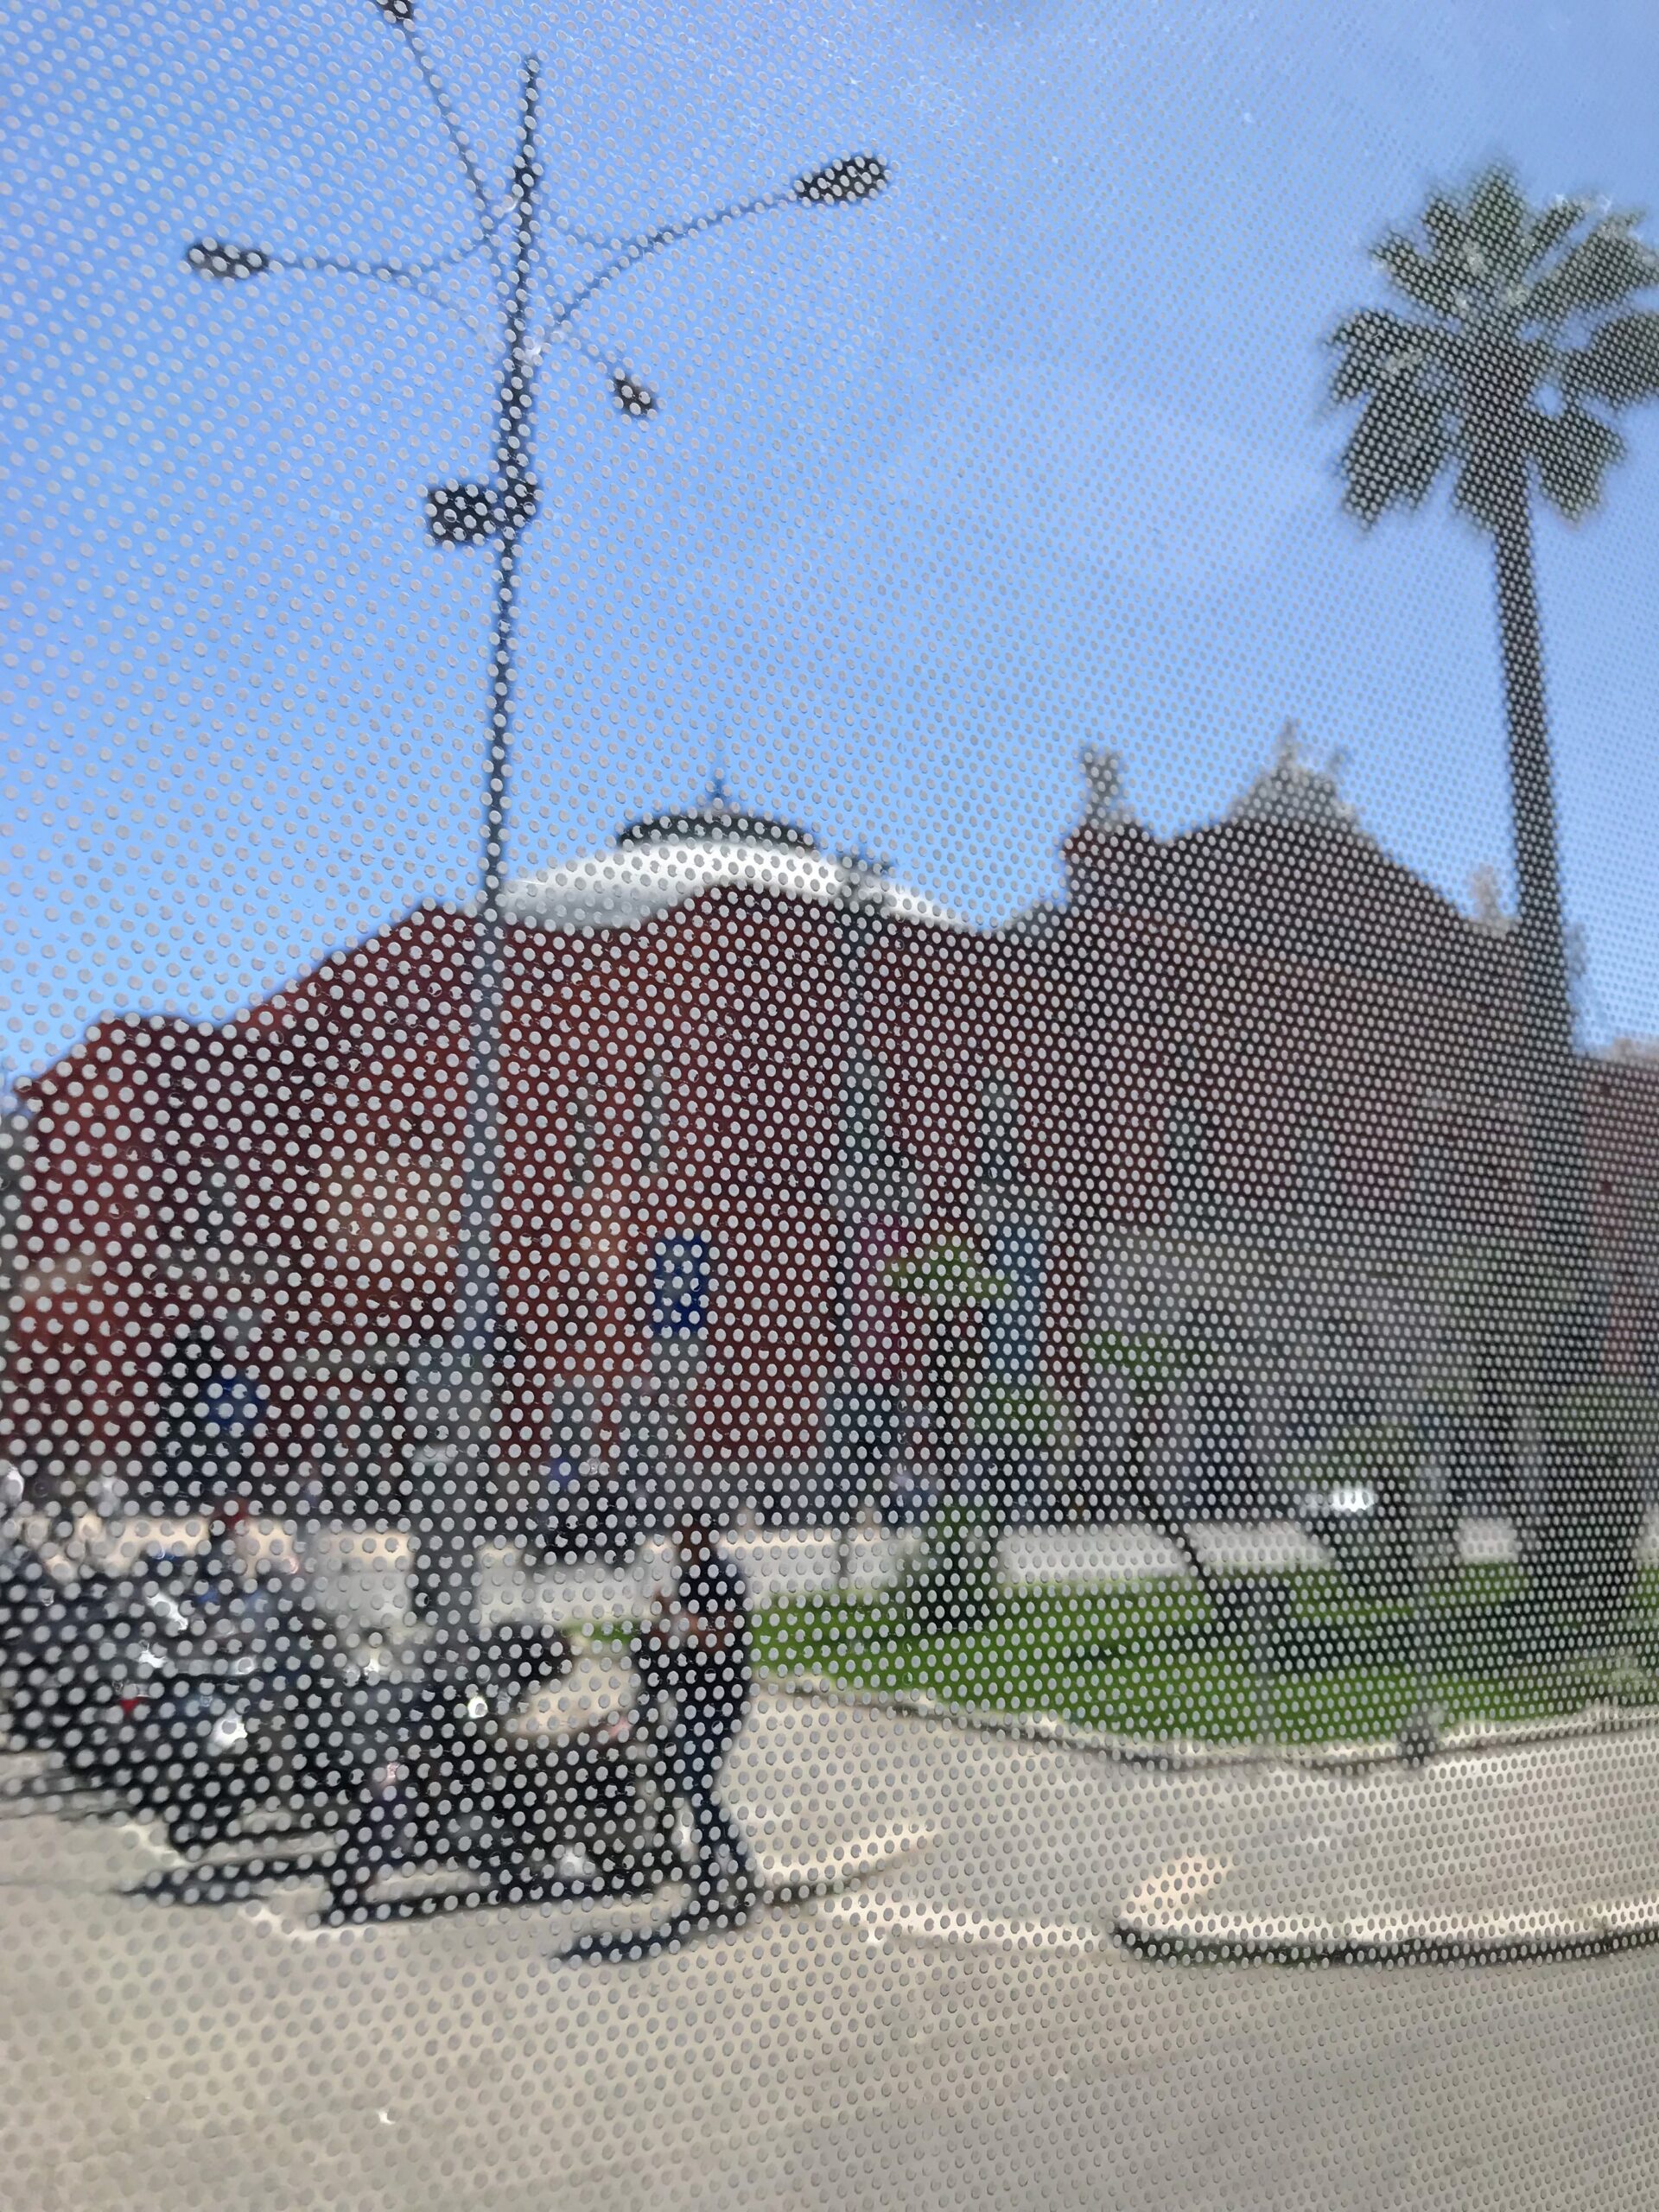 teatro Petruzzelli di bari visto dal finestrino di un autobus